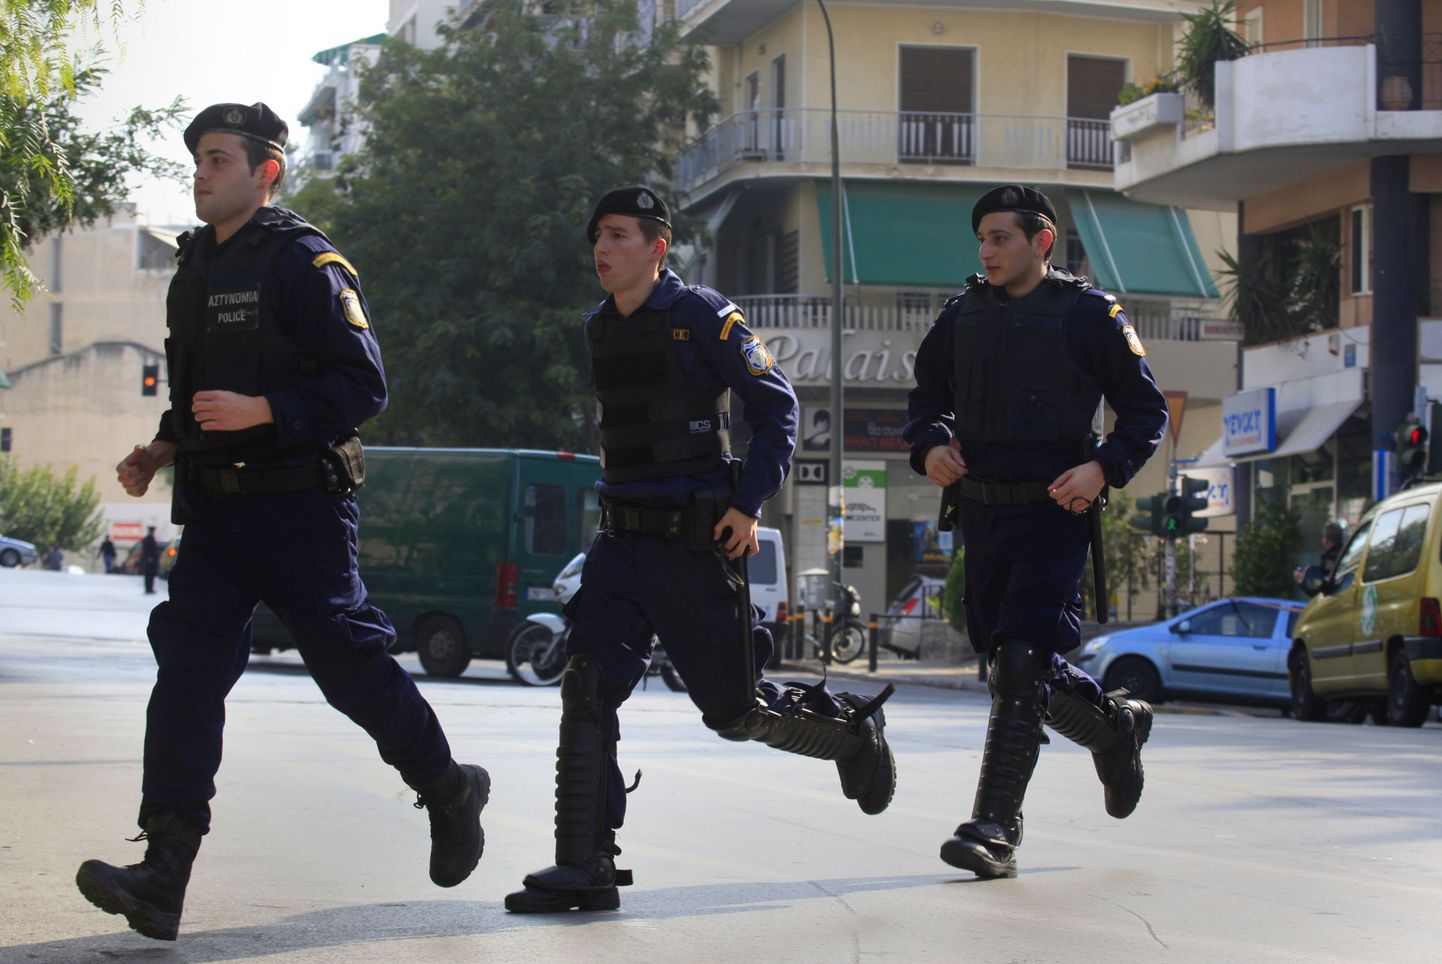 Kreeka politsei pommirühma liikmed.